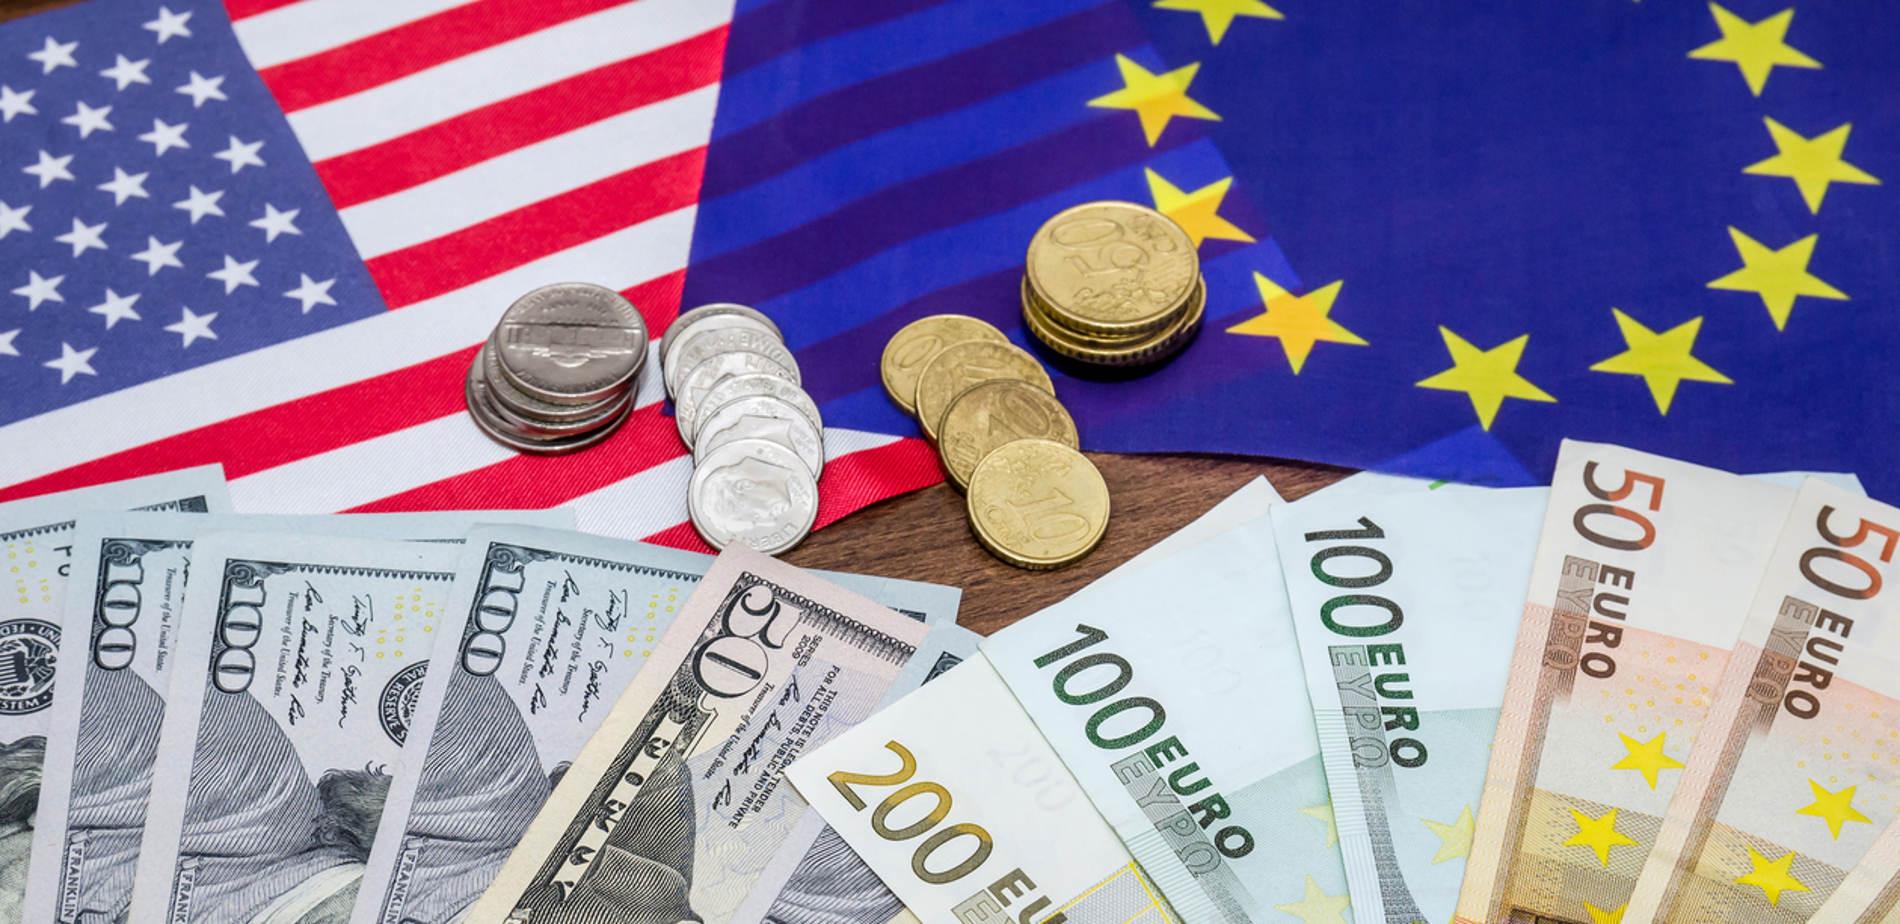 Một đồng Euro tăng giá sẽ nhạy cảm hơn với tin tức từ cuộc họp EU